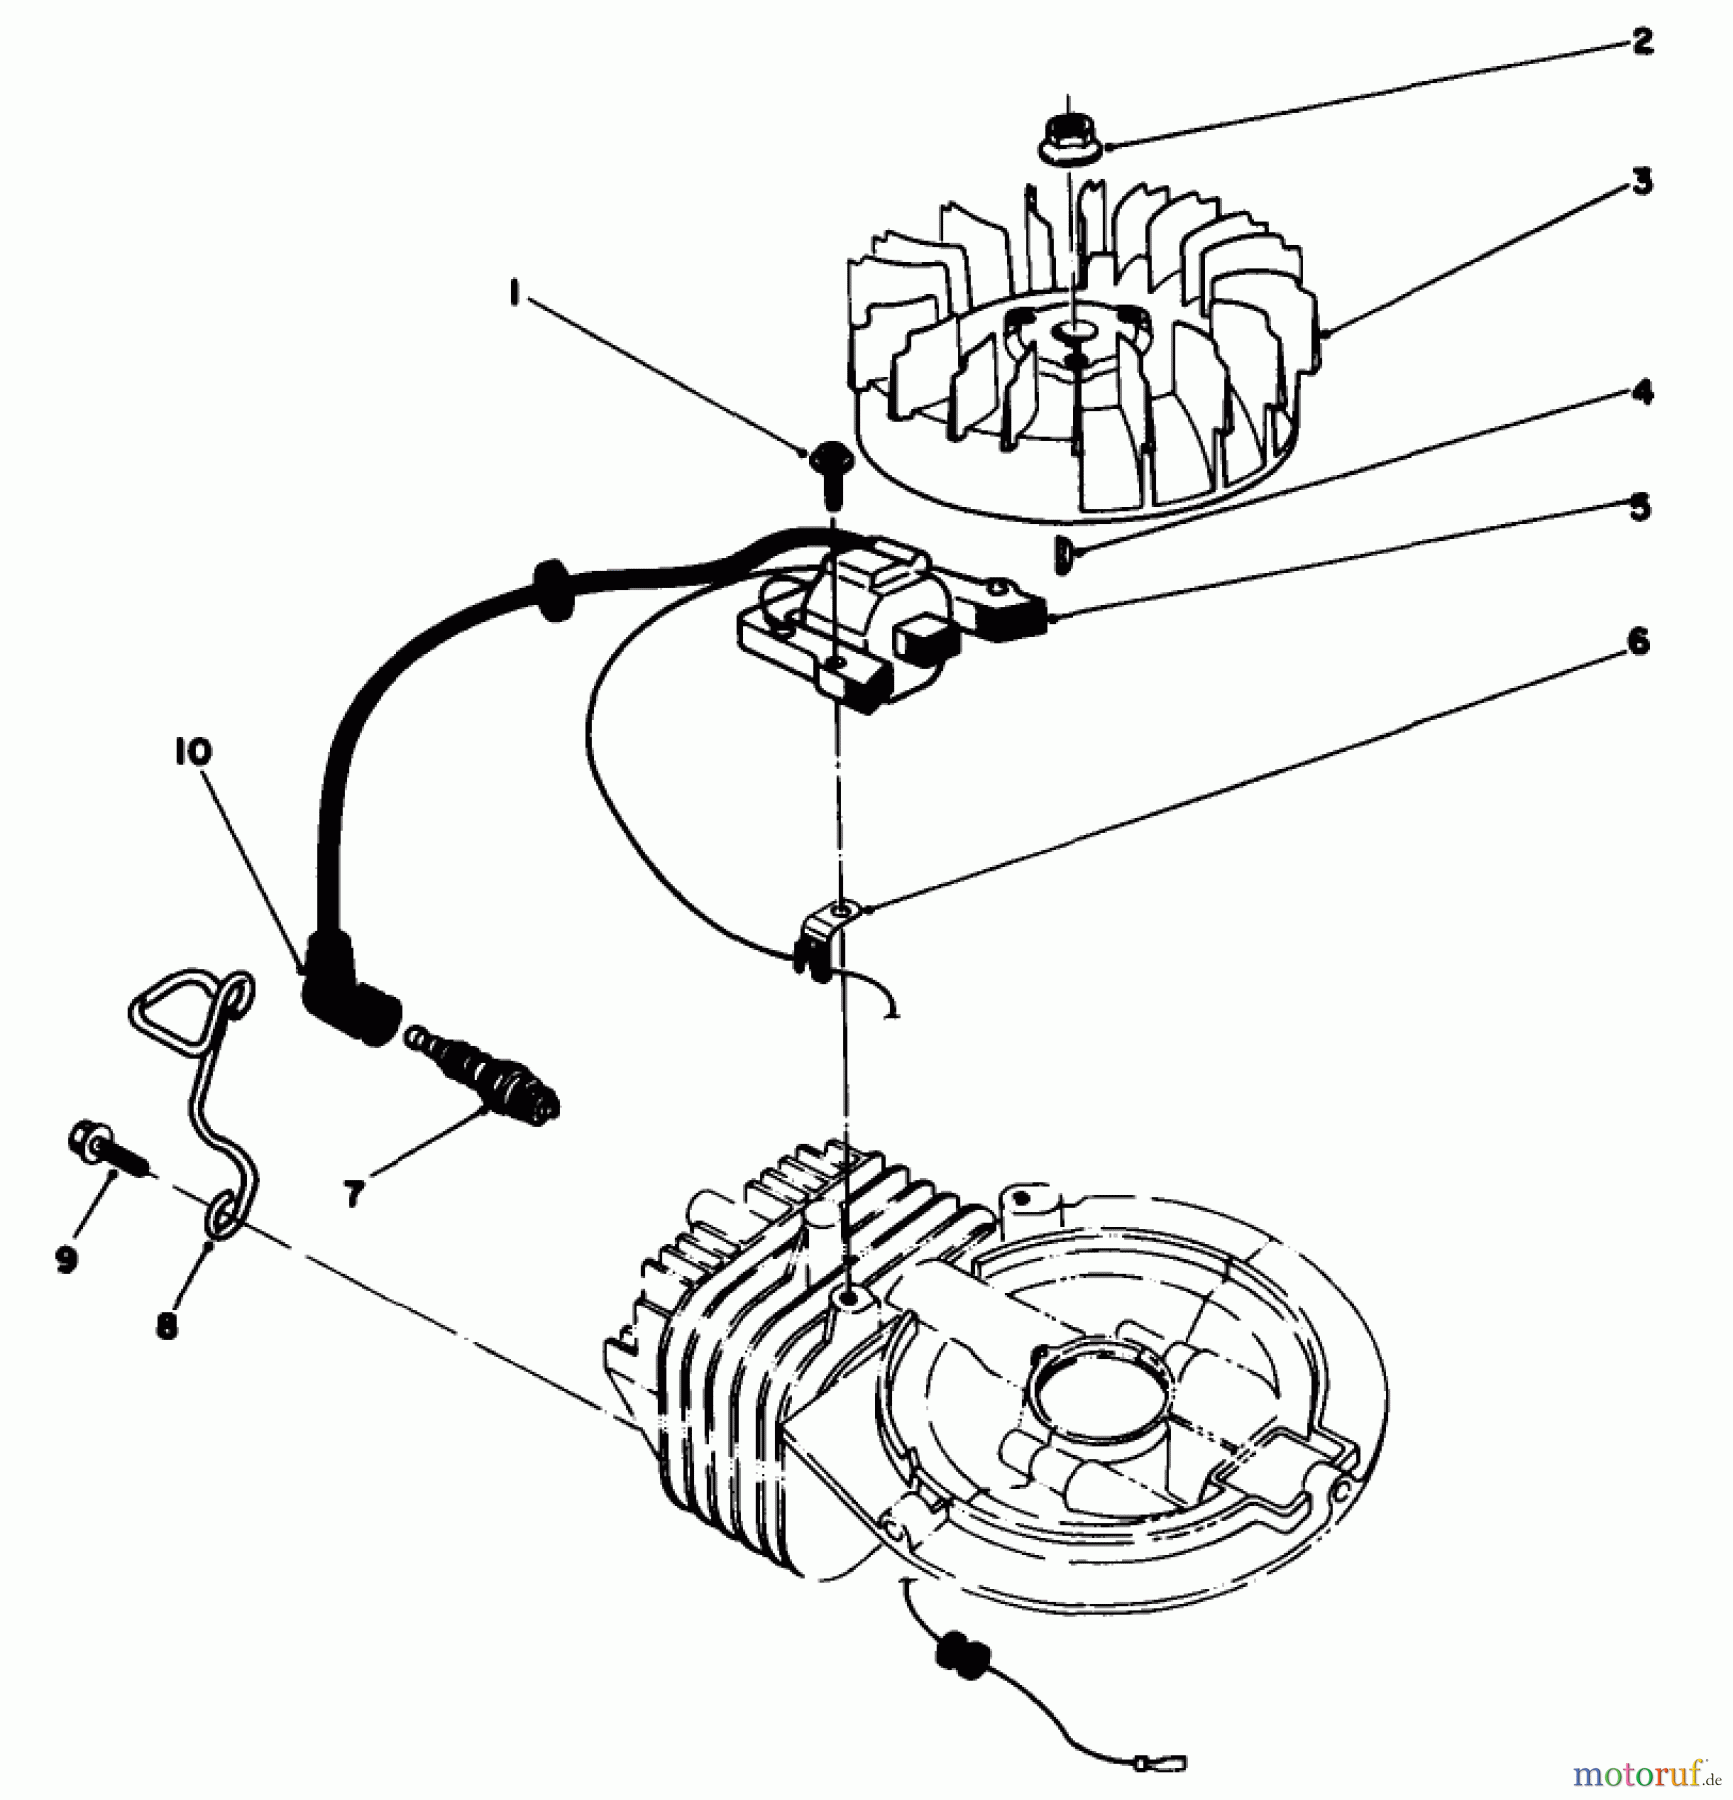  Toro Neu Mowers, Walk-Behind Seite 2 22035 - Toro Lawnmower, 1988 (8002990-8999999) ENGINE ASSEMBLY MODEL NO. 47PH7 #2